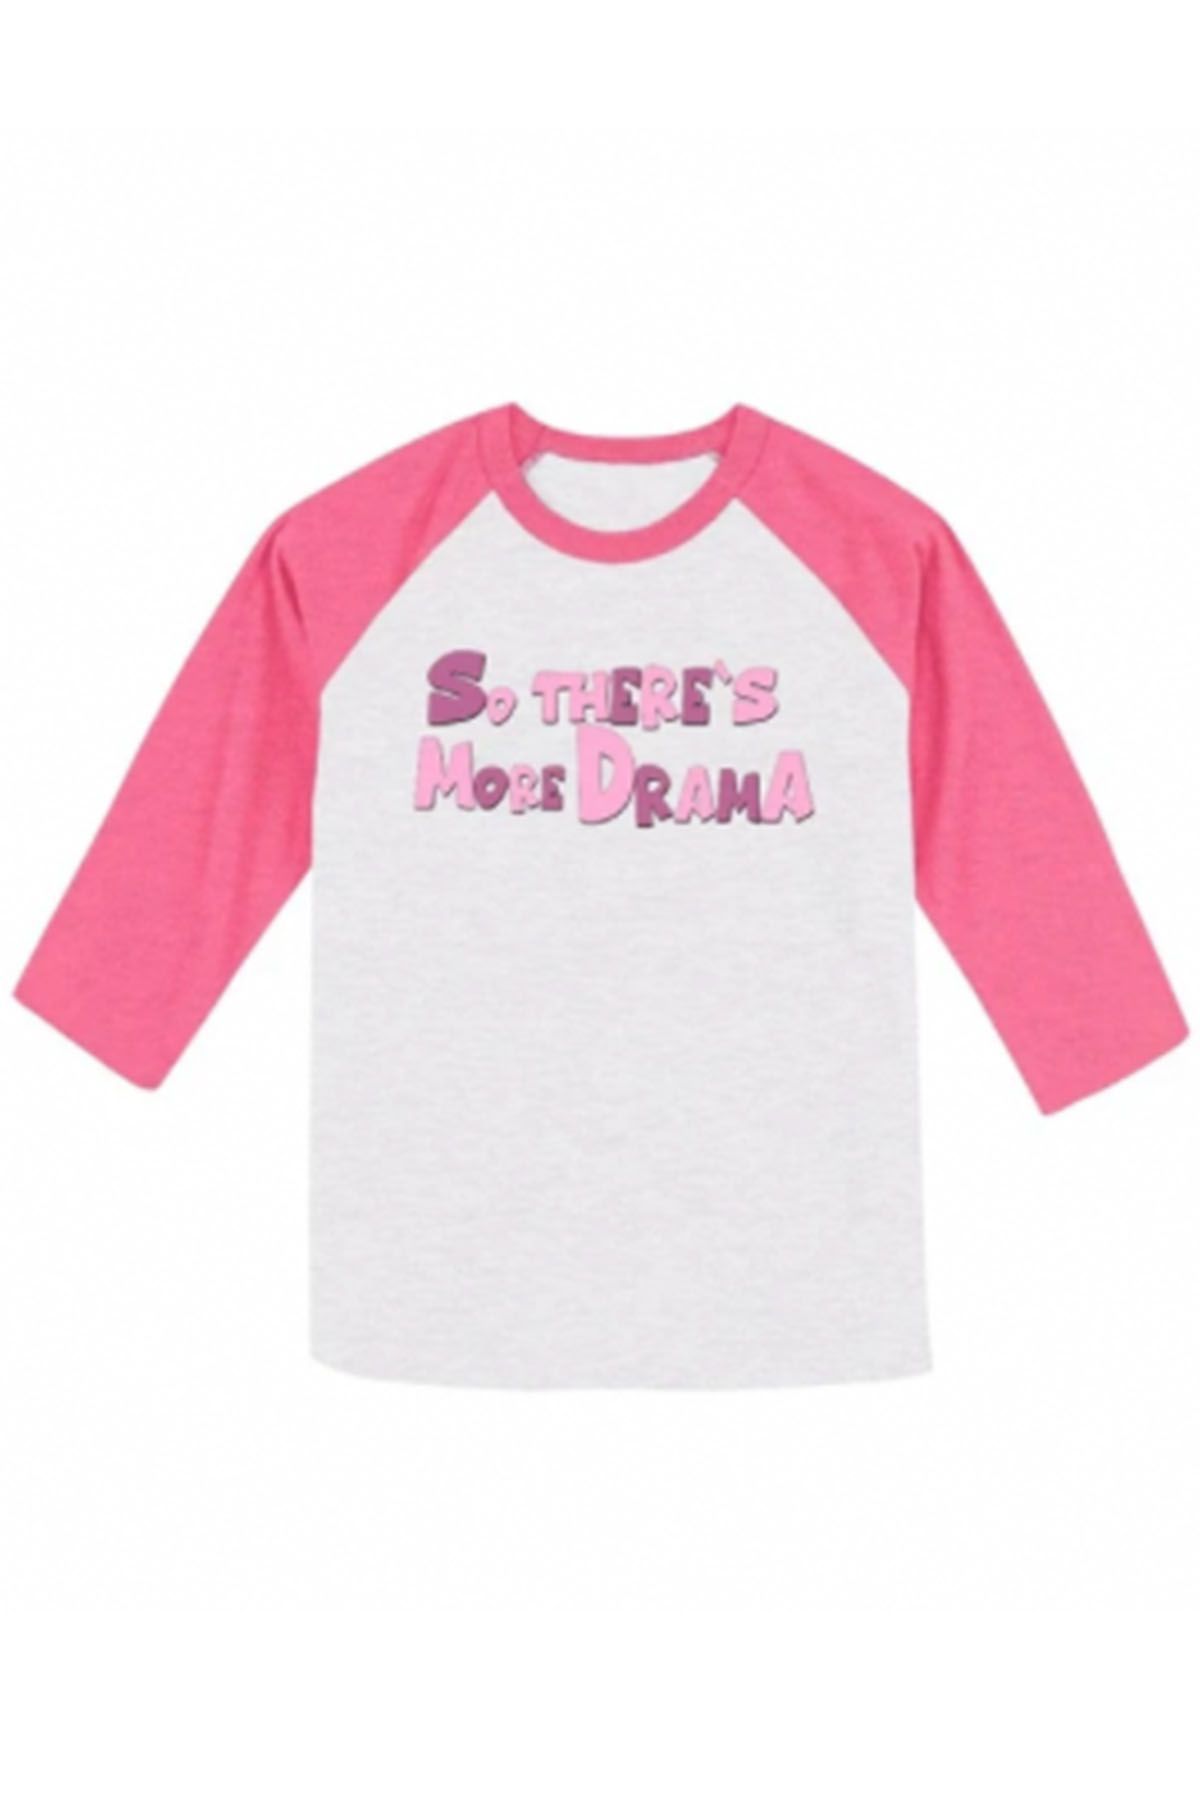 Mads Lewis: 'More Drama' Pink Baseball Shirt